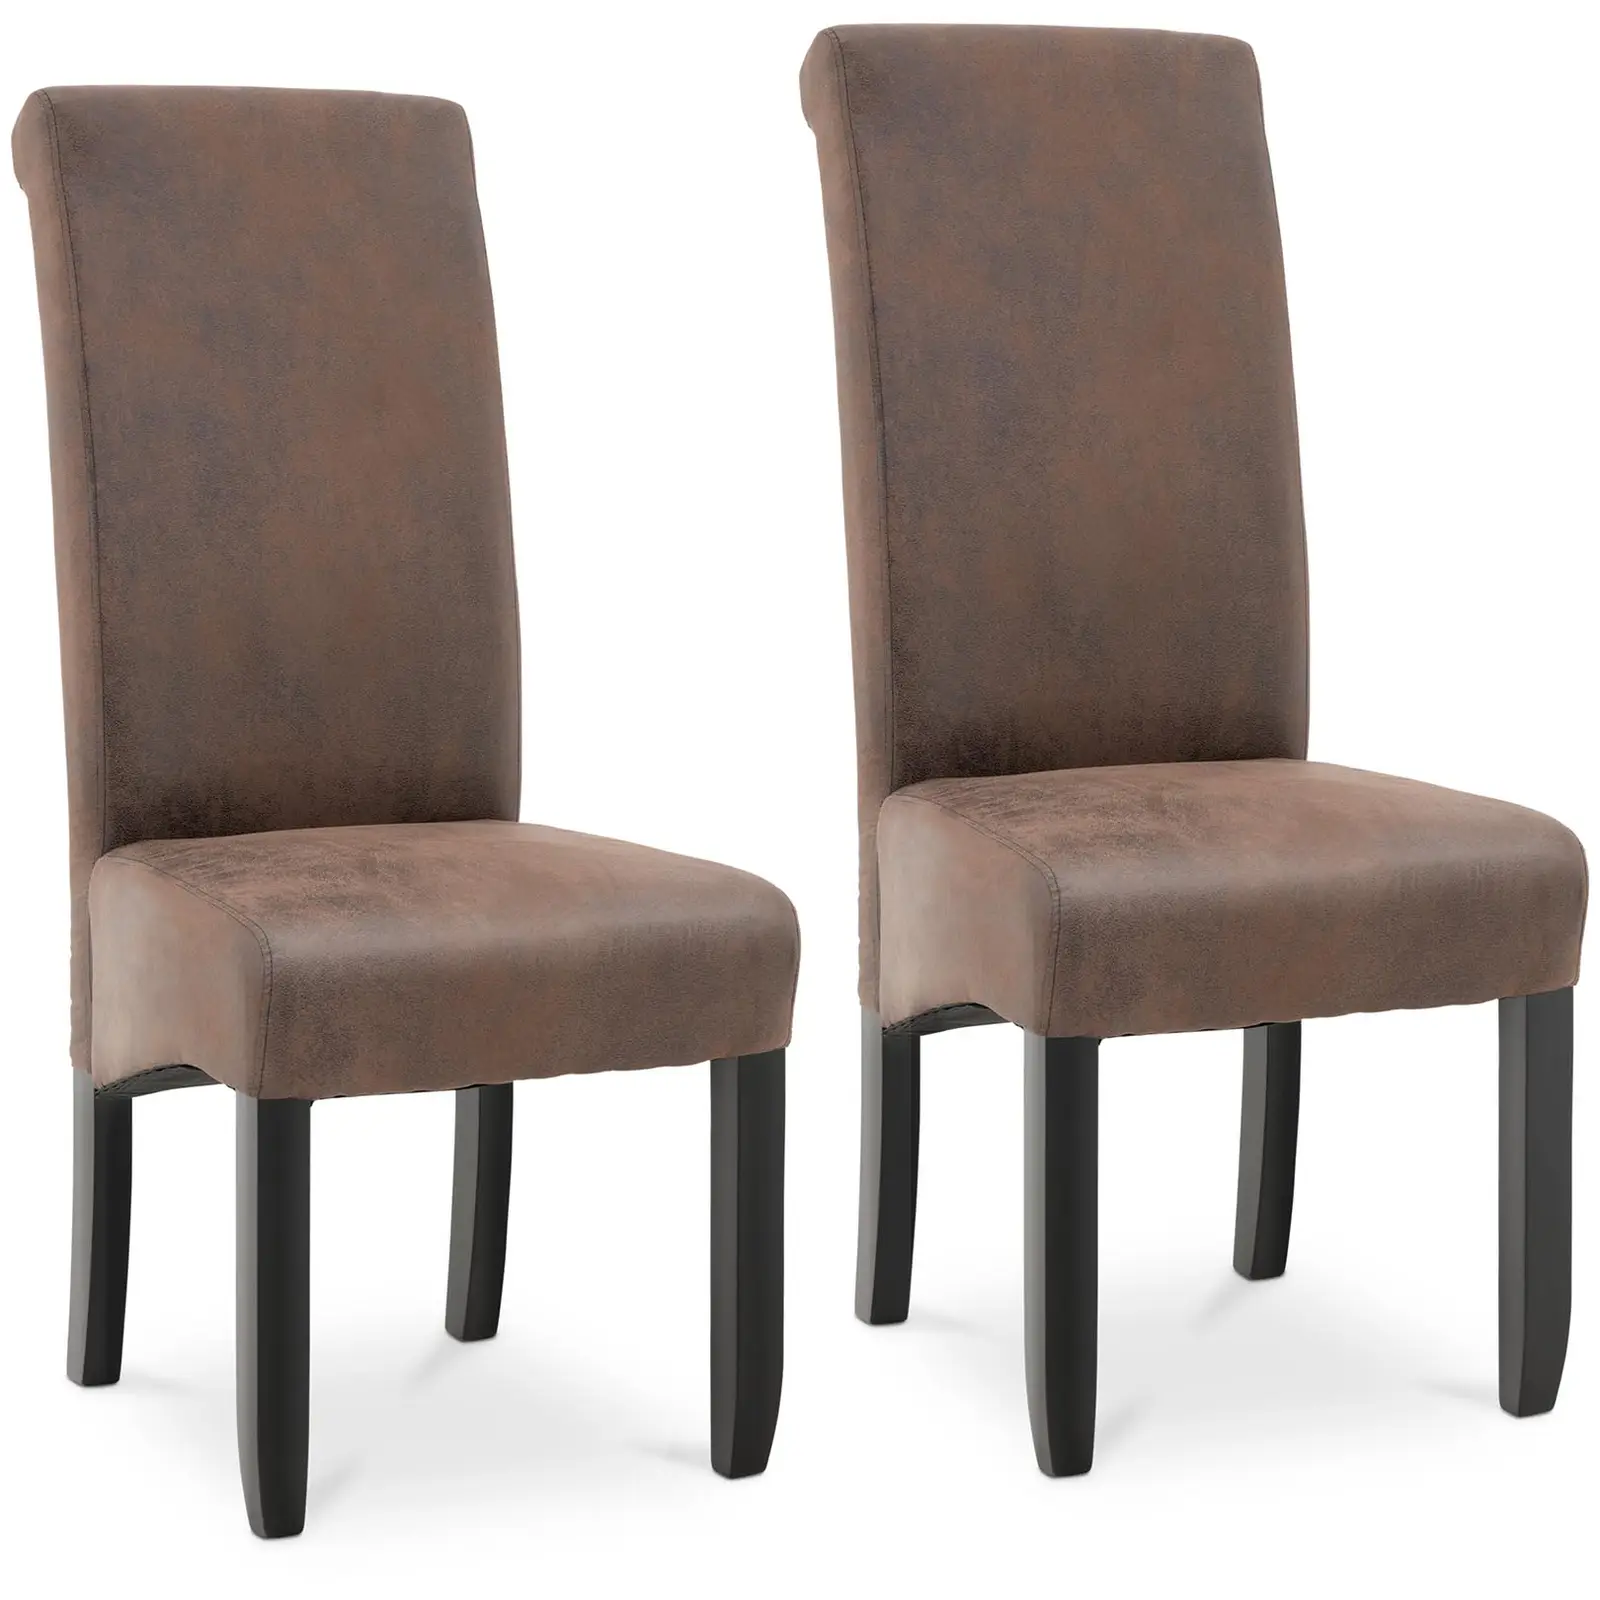 Čalouněná židle - sada 2 kusů - do 150 kg - sedací plocha 44,5 x 44 cm - hnědá